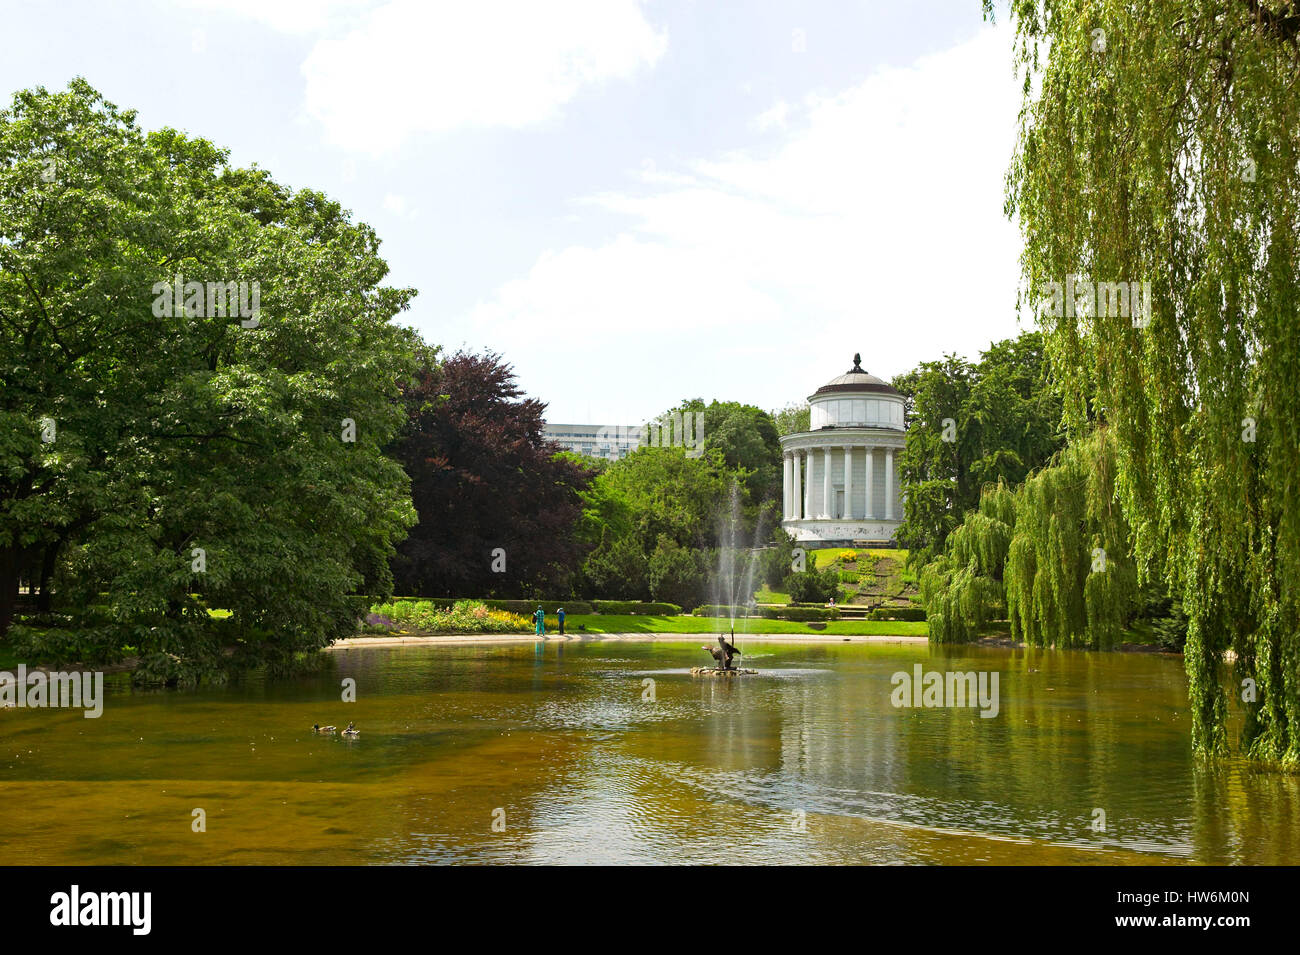 Saxon Garden, Ogrod Saski, public park in the city center of Warsaw, Poland, Europe Stock Photo